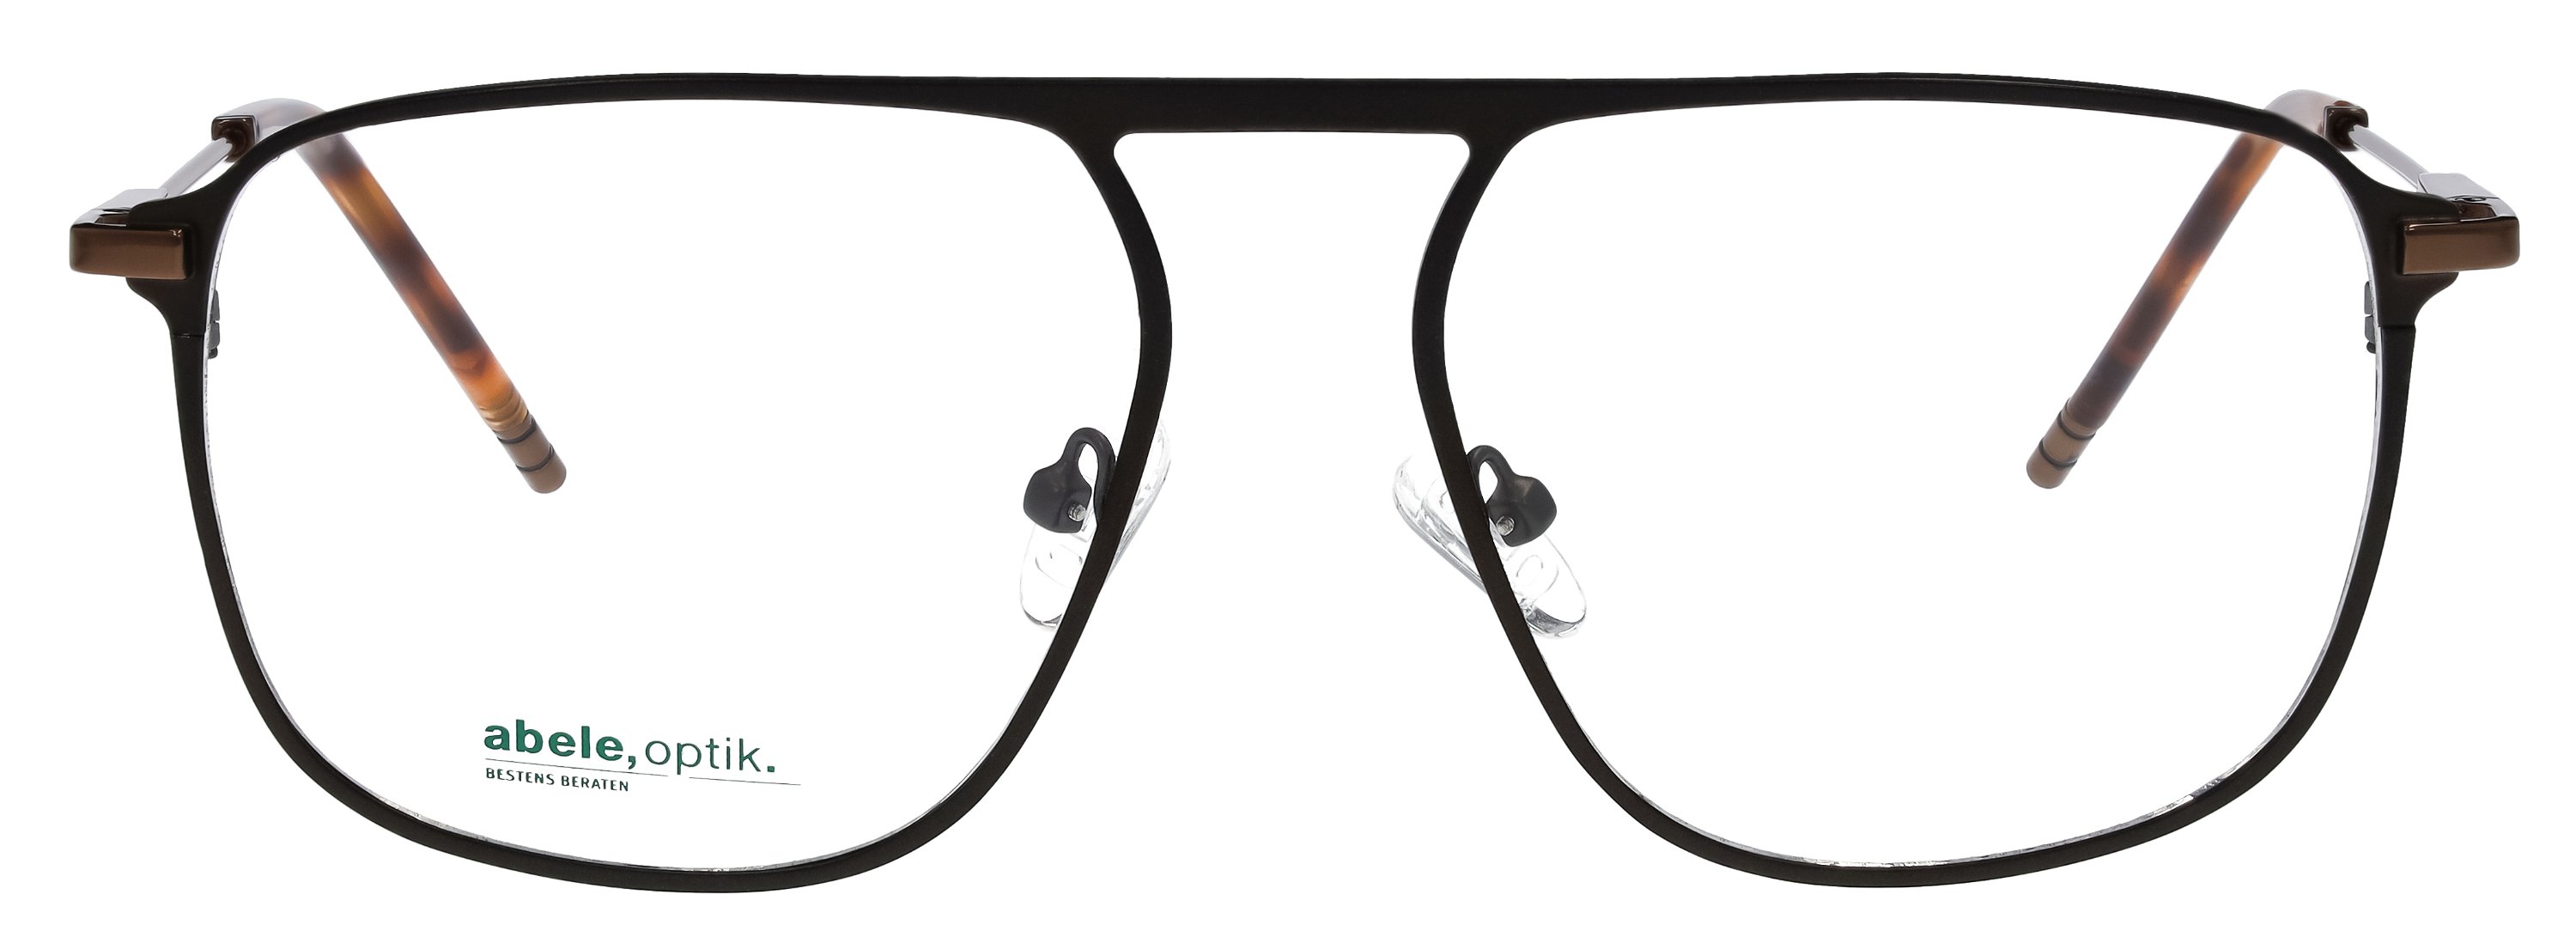 Das Bild zeigt die Korrektionsbrille 148081 von der Marke Abele Optik in schwarz matt.